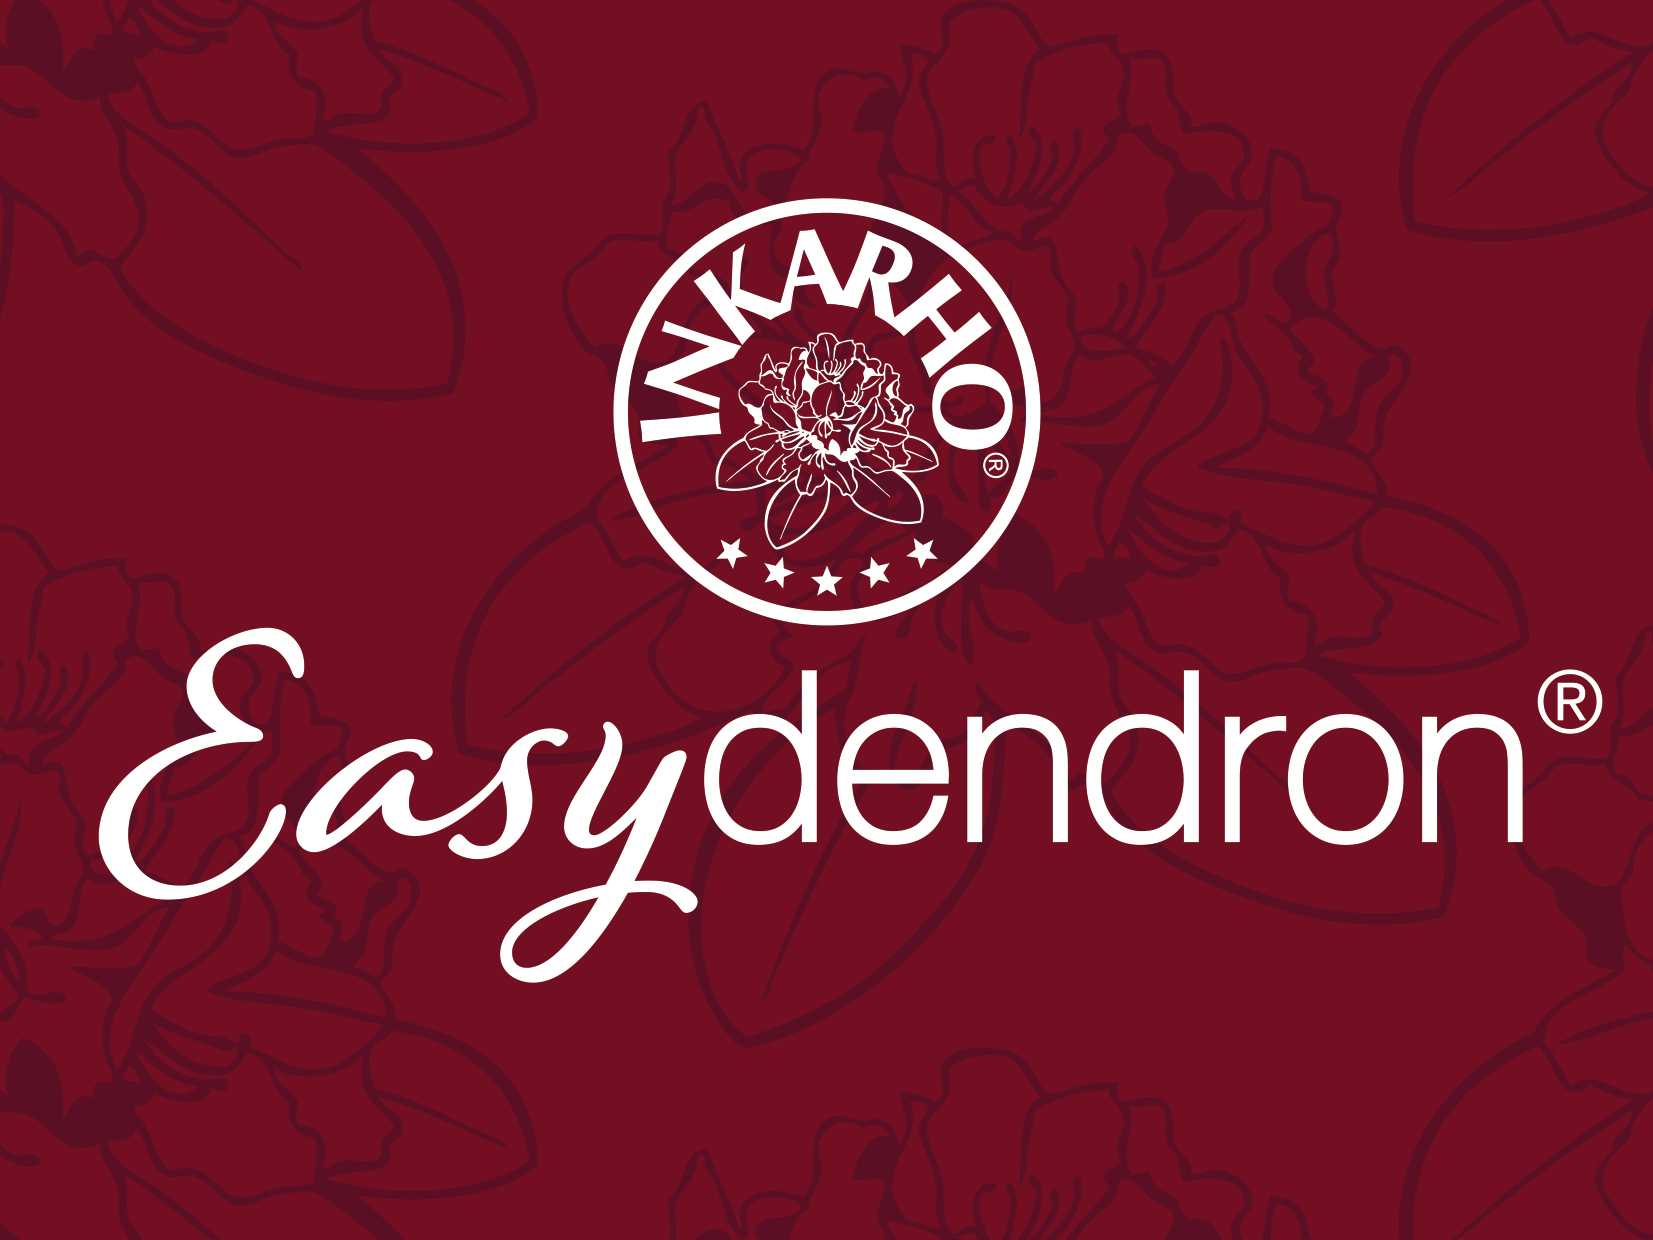 Easydendron Markenlogo